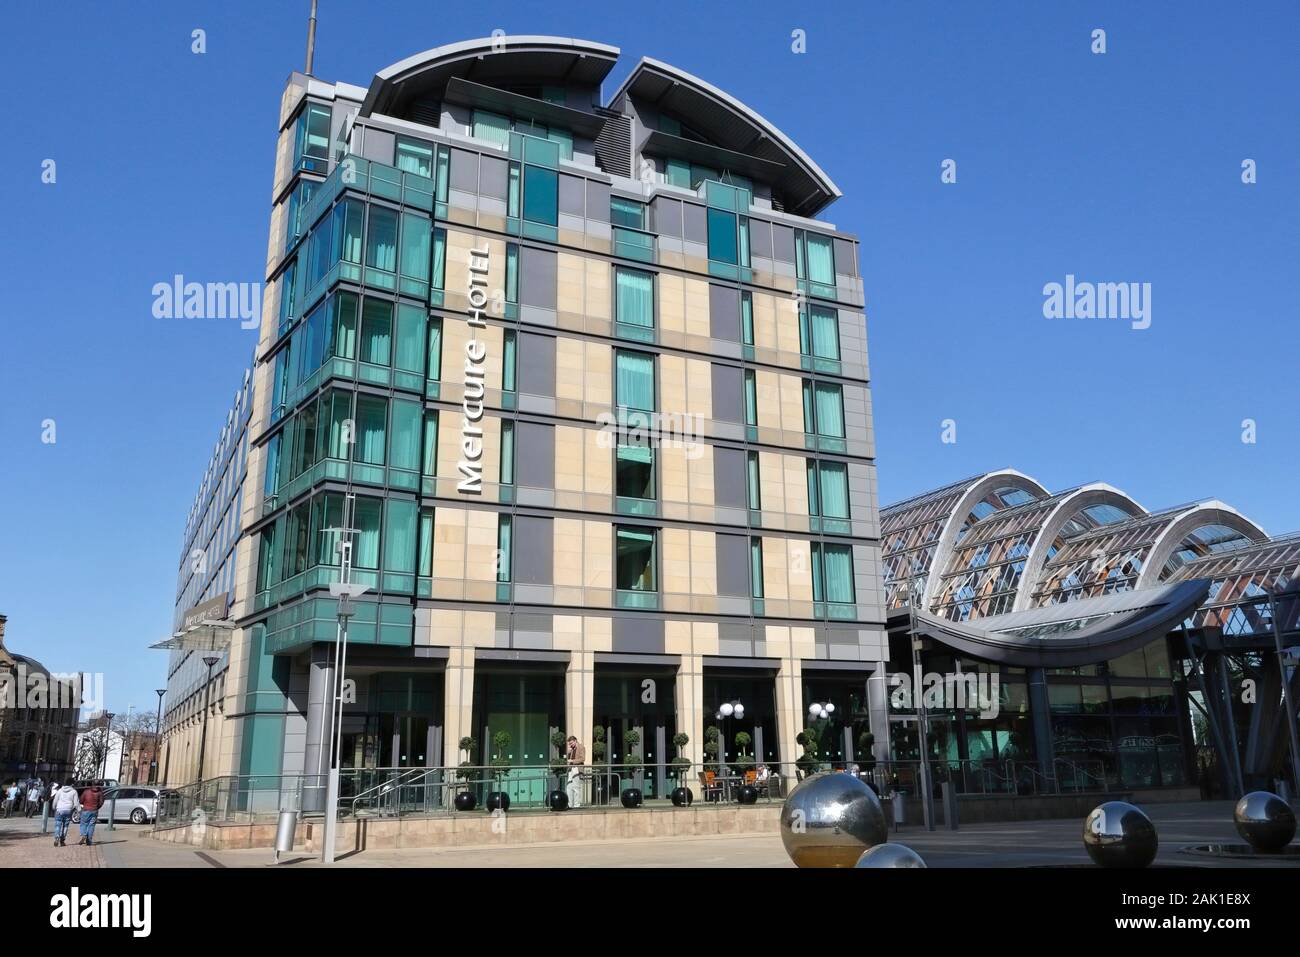 El Hotel Mercure del edificio, el centro de la ciudad de Sheffield, Inglaterra Foto de stock